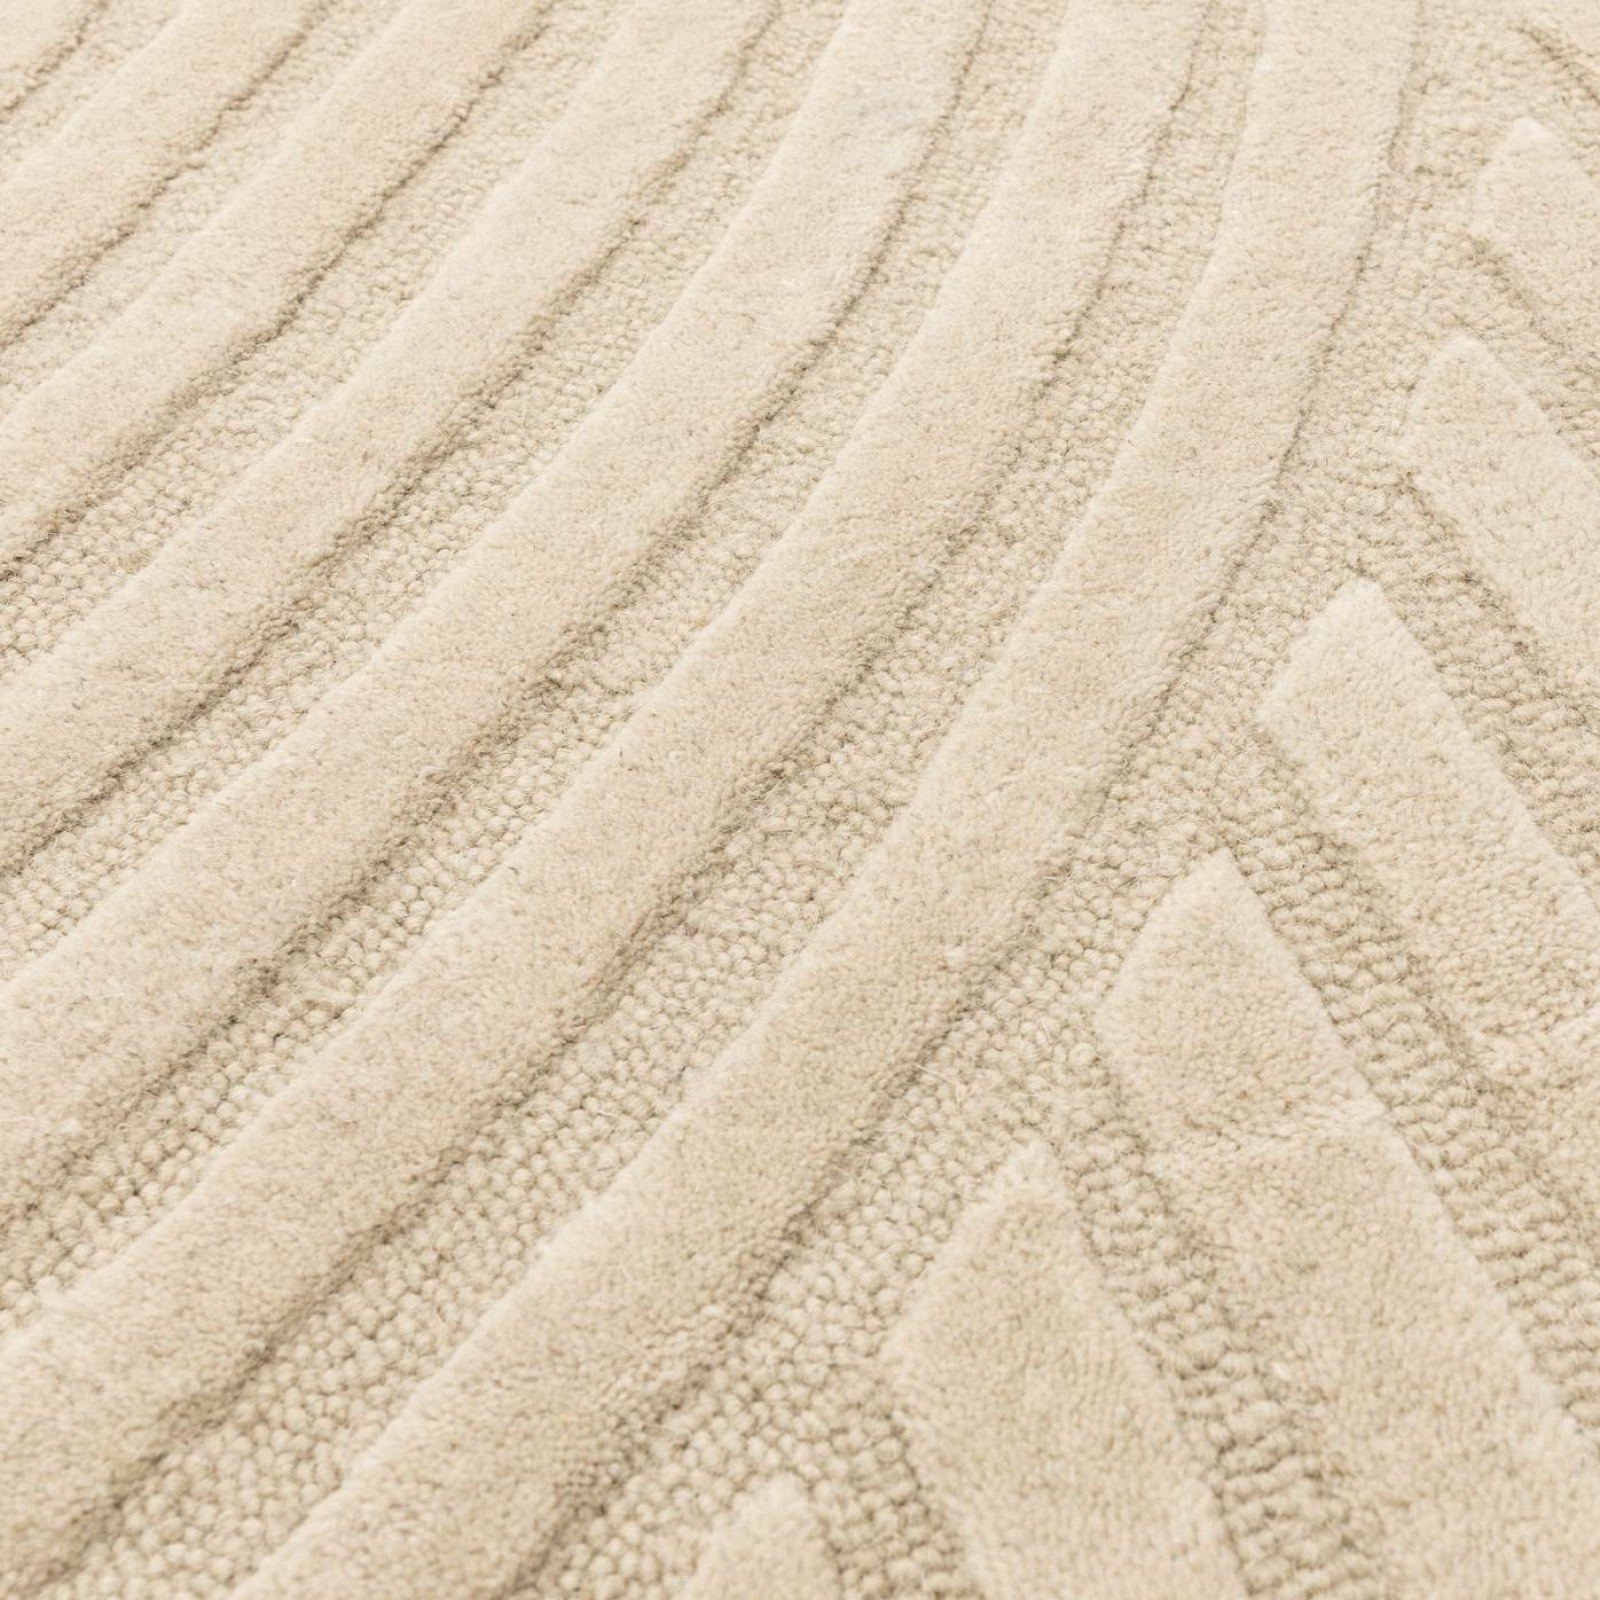 Hague sand carpet